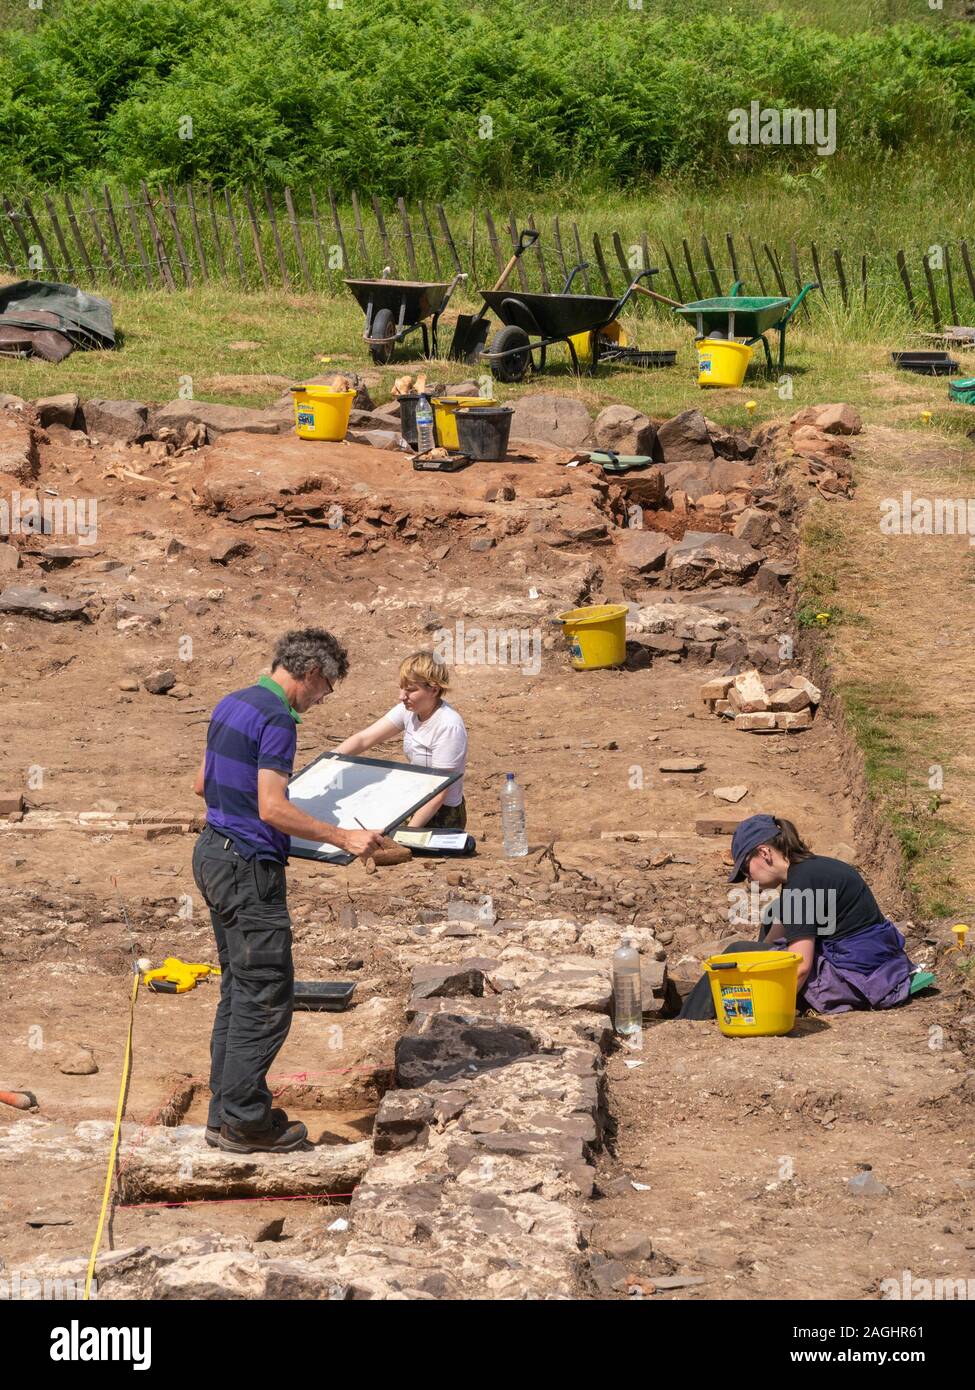 Archäologische Grabung von der Universität Leicester Archäologie Schüler auf eine Entdeckungsreise zu Bradgate Park, Leicestershire, England, Großbritannien Stockfoto